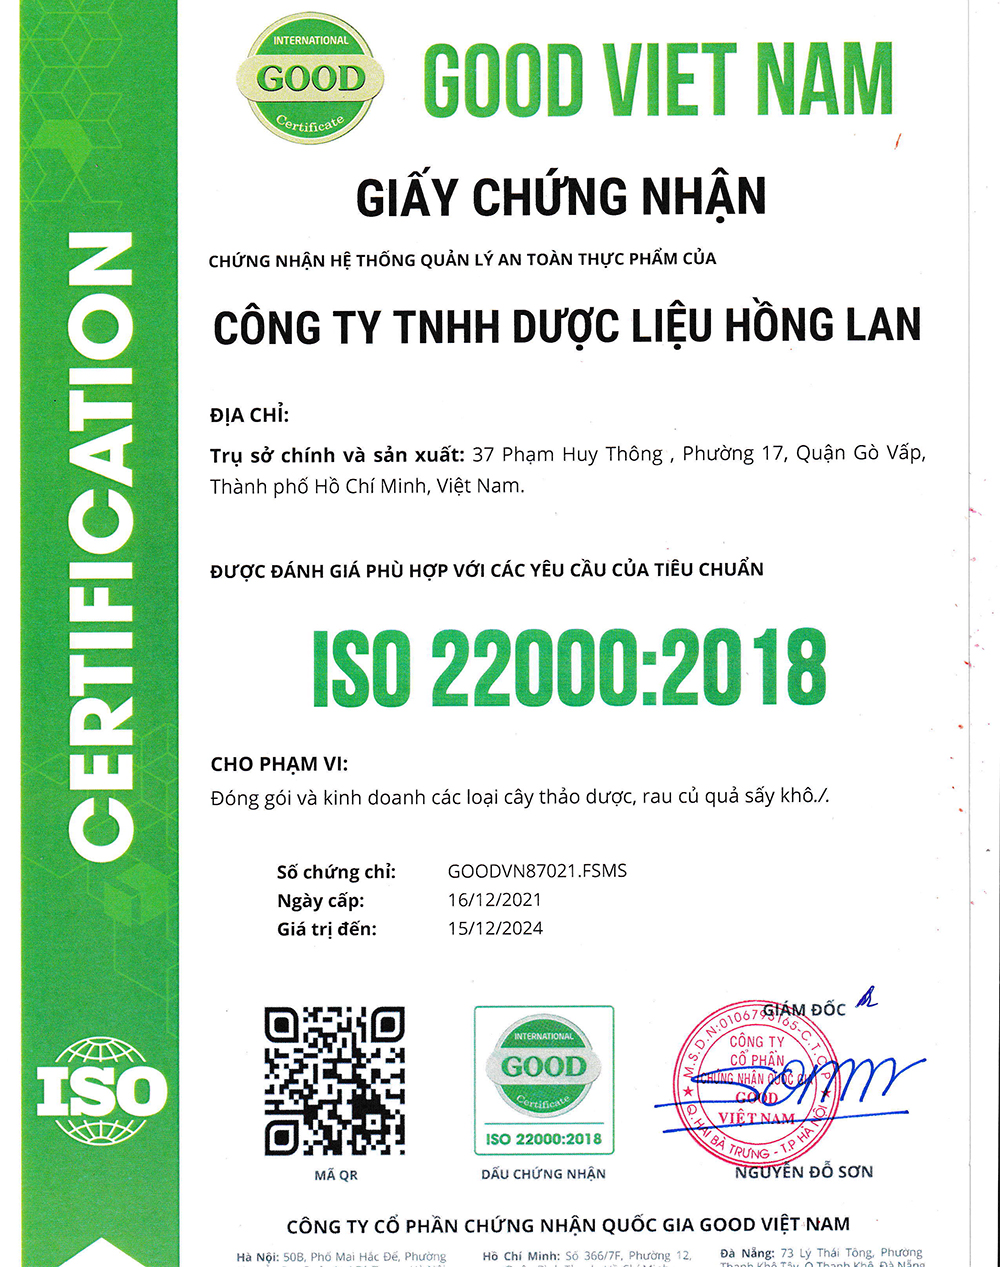 Trà túi lọc Cây Thanh Hao Hoa Vàng được sản xuất bởi Công ty TNHH Dược Liệu Hồng Lan theo hệ thống quản lý an toàn thực phẩm ISO 22000:2018 được cấp bởi công ty cổ phần chứng nhận Quốc Gia Good Việt Nam (Good Viet Nam Certification Joint Stock Company)